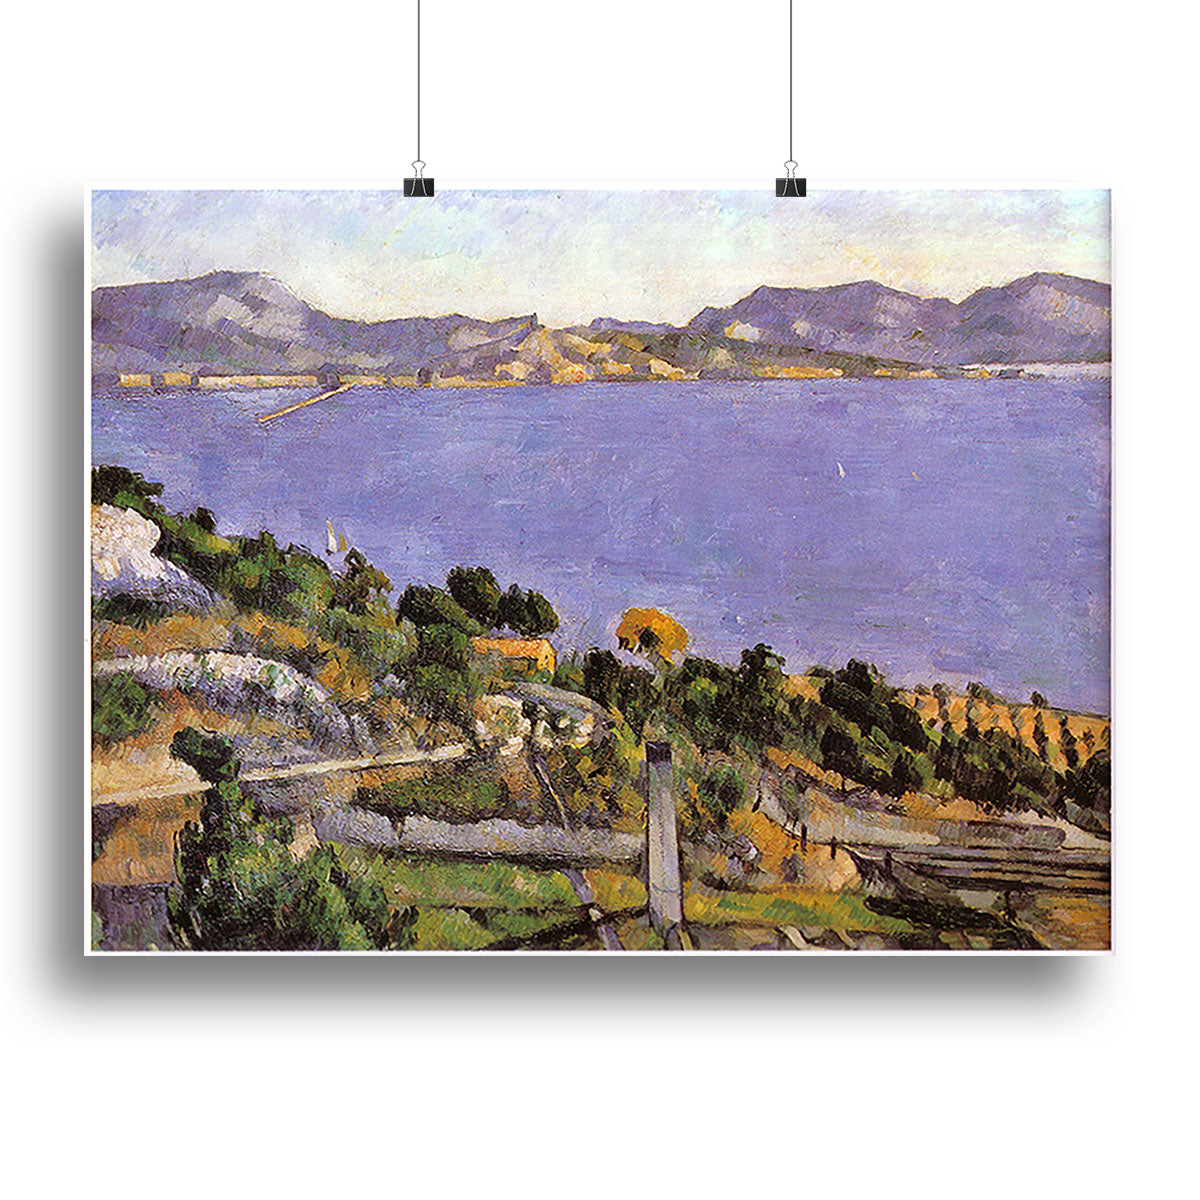 L Estaque vue du golfe de Marseille 1878 by Cezanne Canvas Print or Poster - Canvas Art Rocks - 2